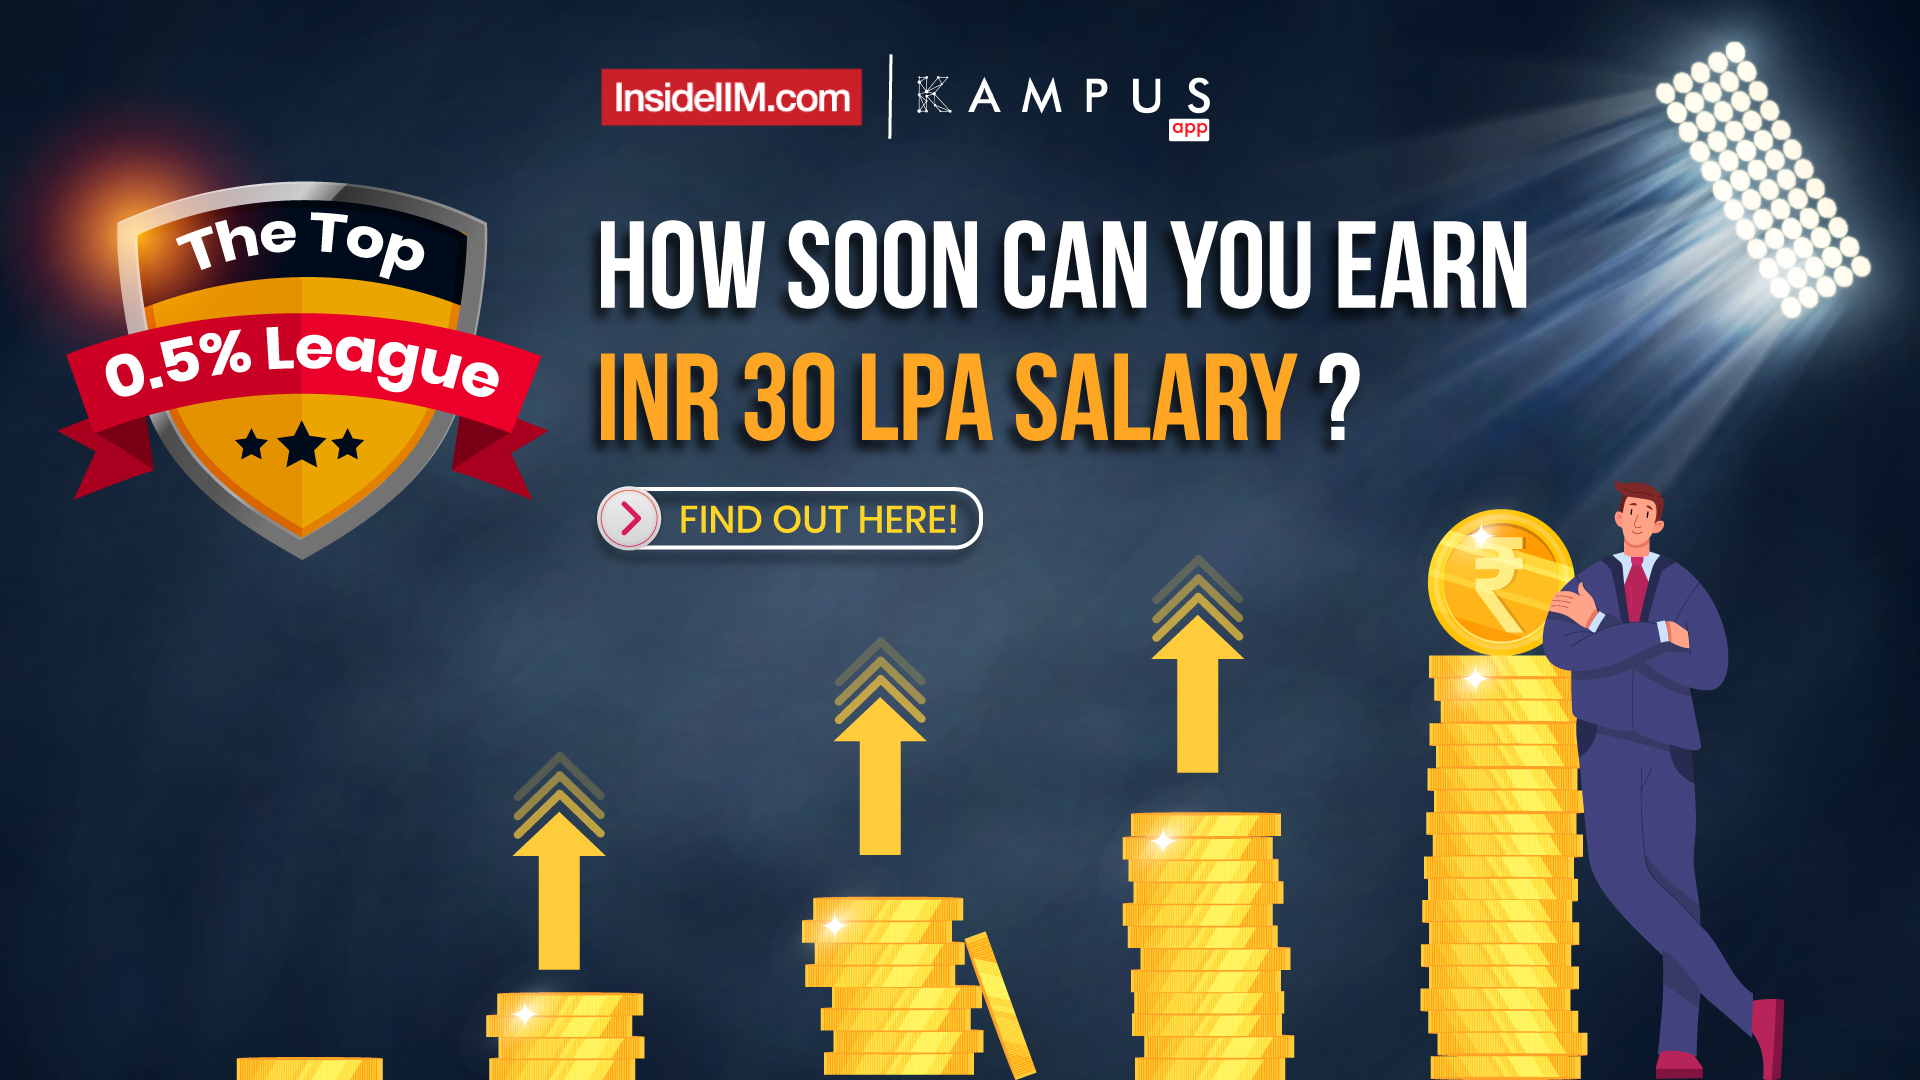 The Top 0.5% League - How Soon Can You Earn INR 30 LPA Salary?